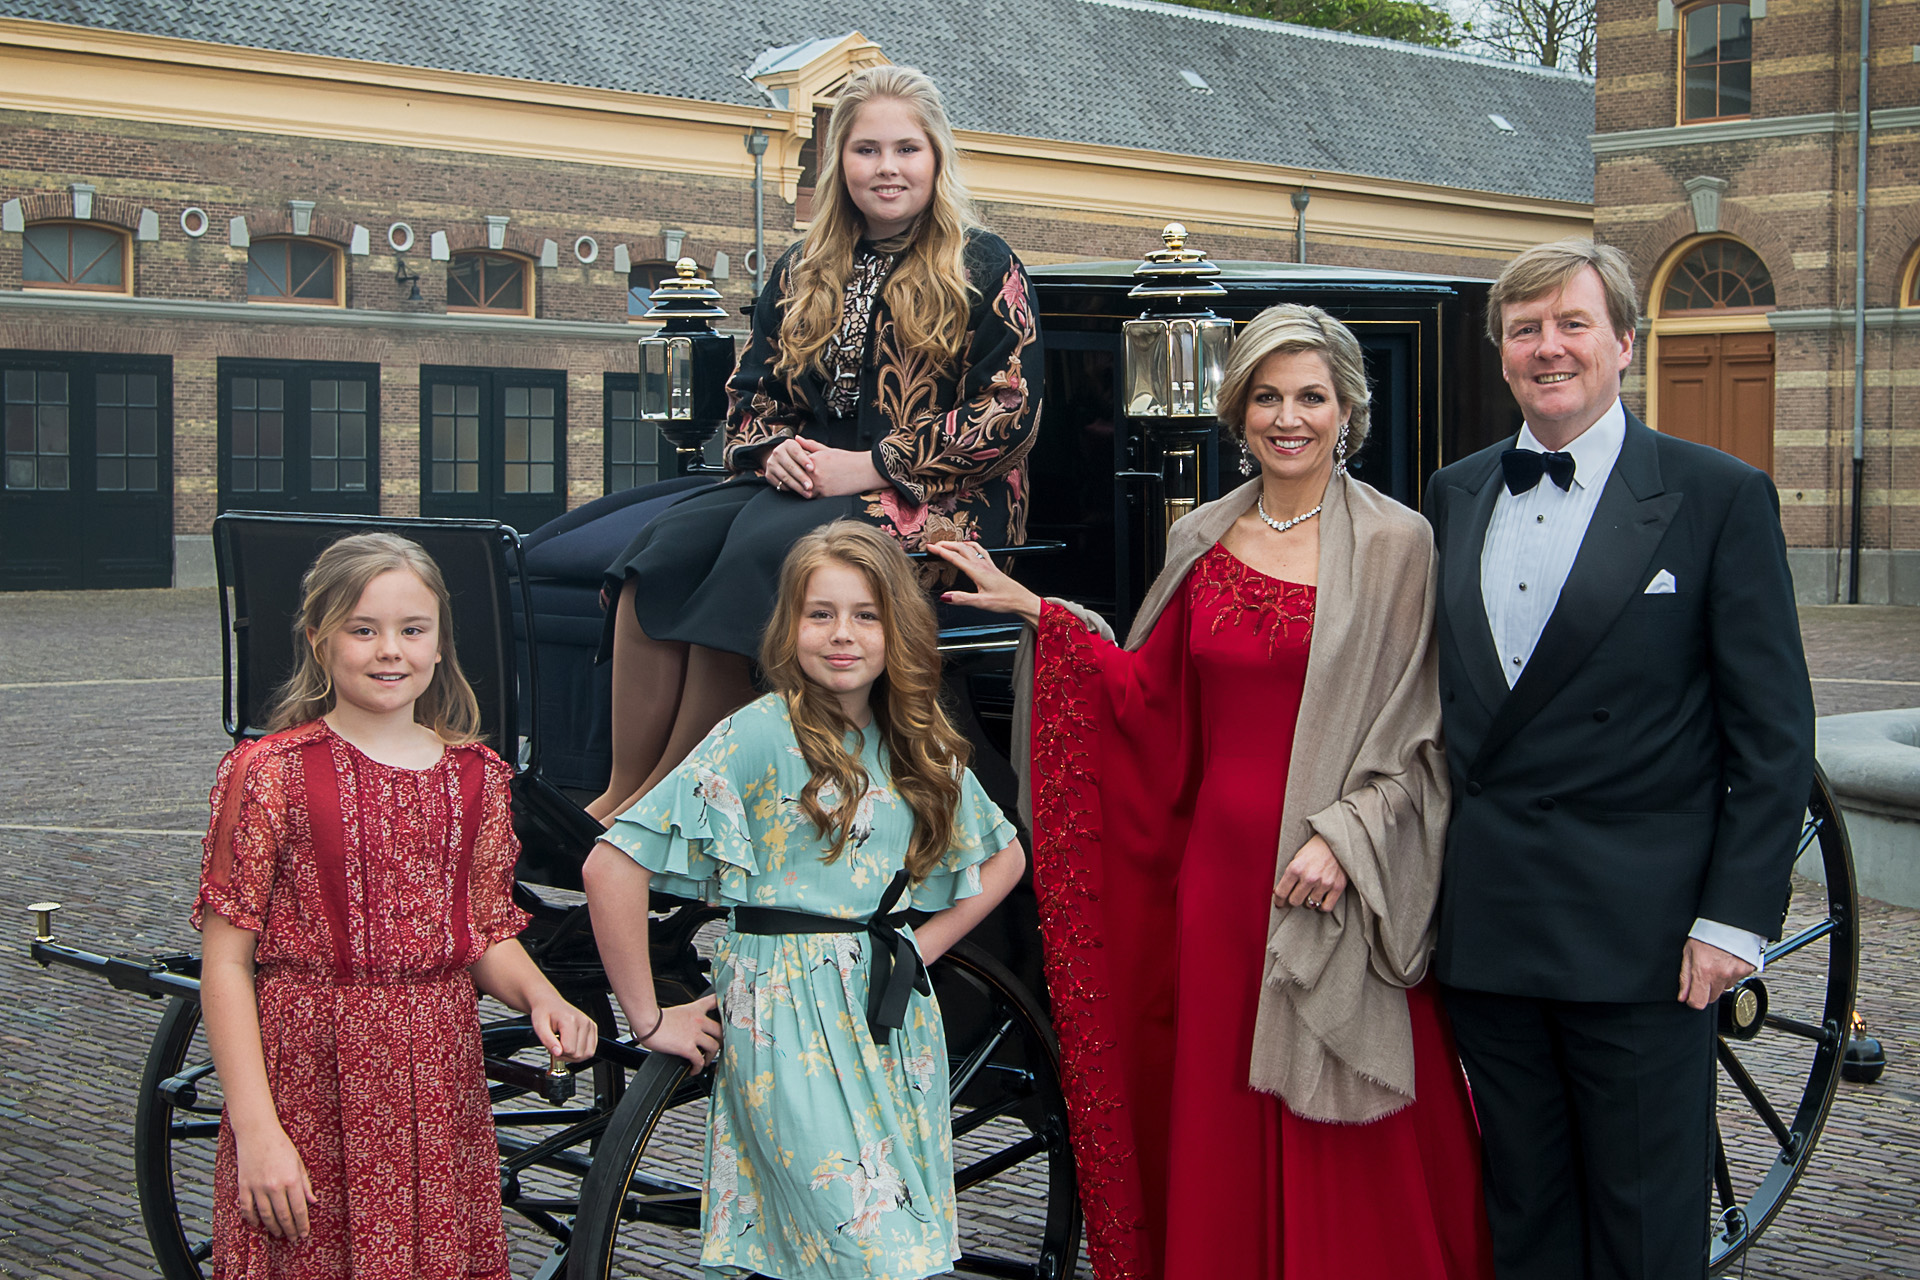 <p>Las fotos más bonitas del Rey Willem-Alexander</p>